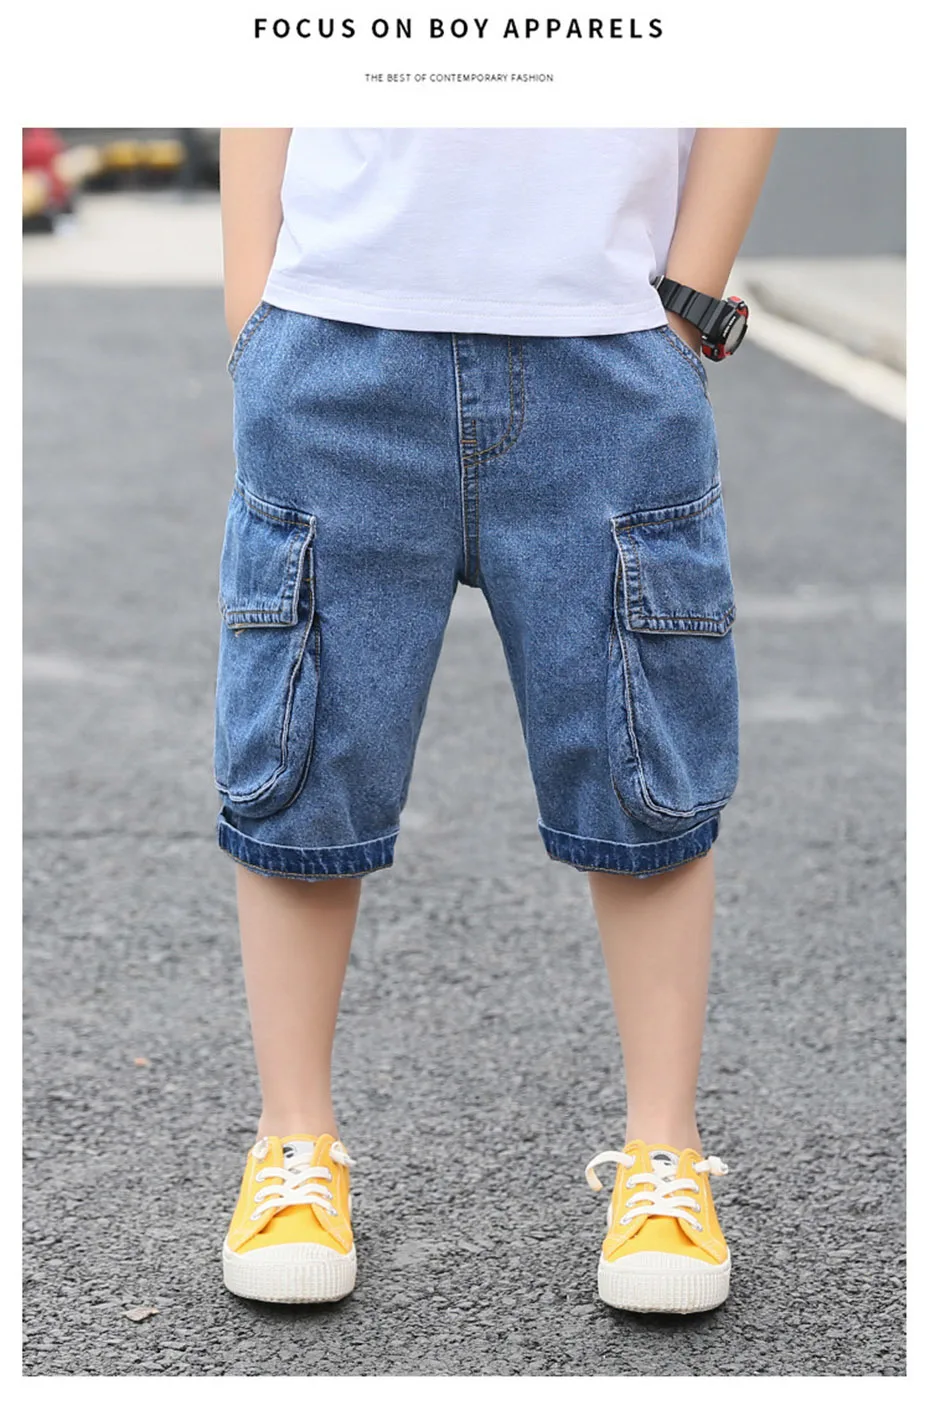 Джинсы для мальчиков; брюки Повседневное Стиль для маленьких мальчиков короткие джинсы однотонные детские джинсы на возраст 6, 8, 10, 12 лет, 13, 14 лет, одежда для подростков